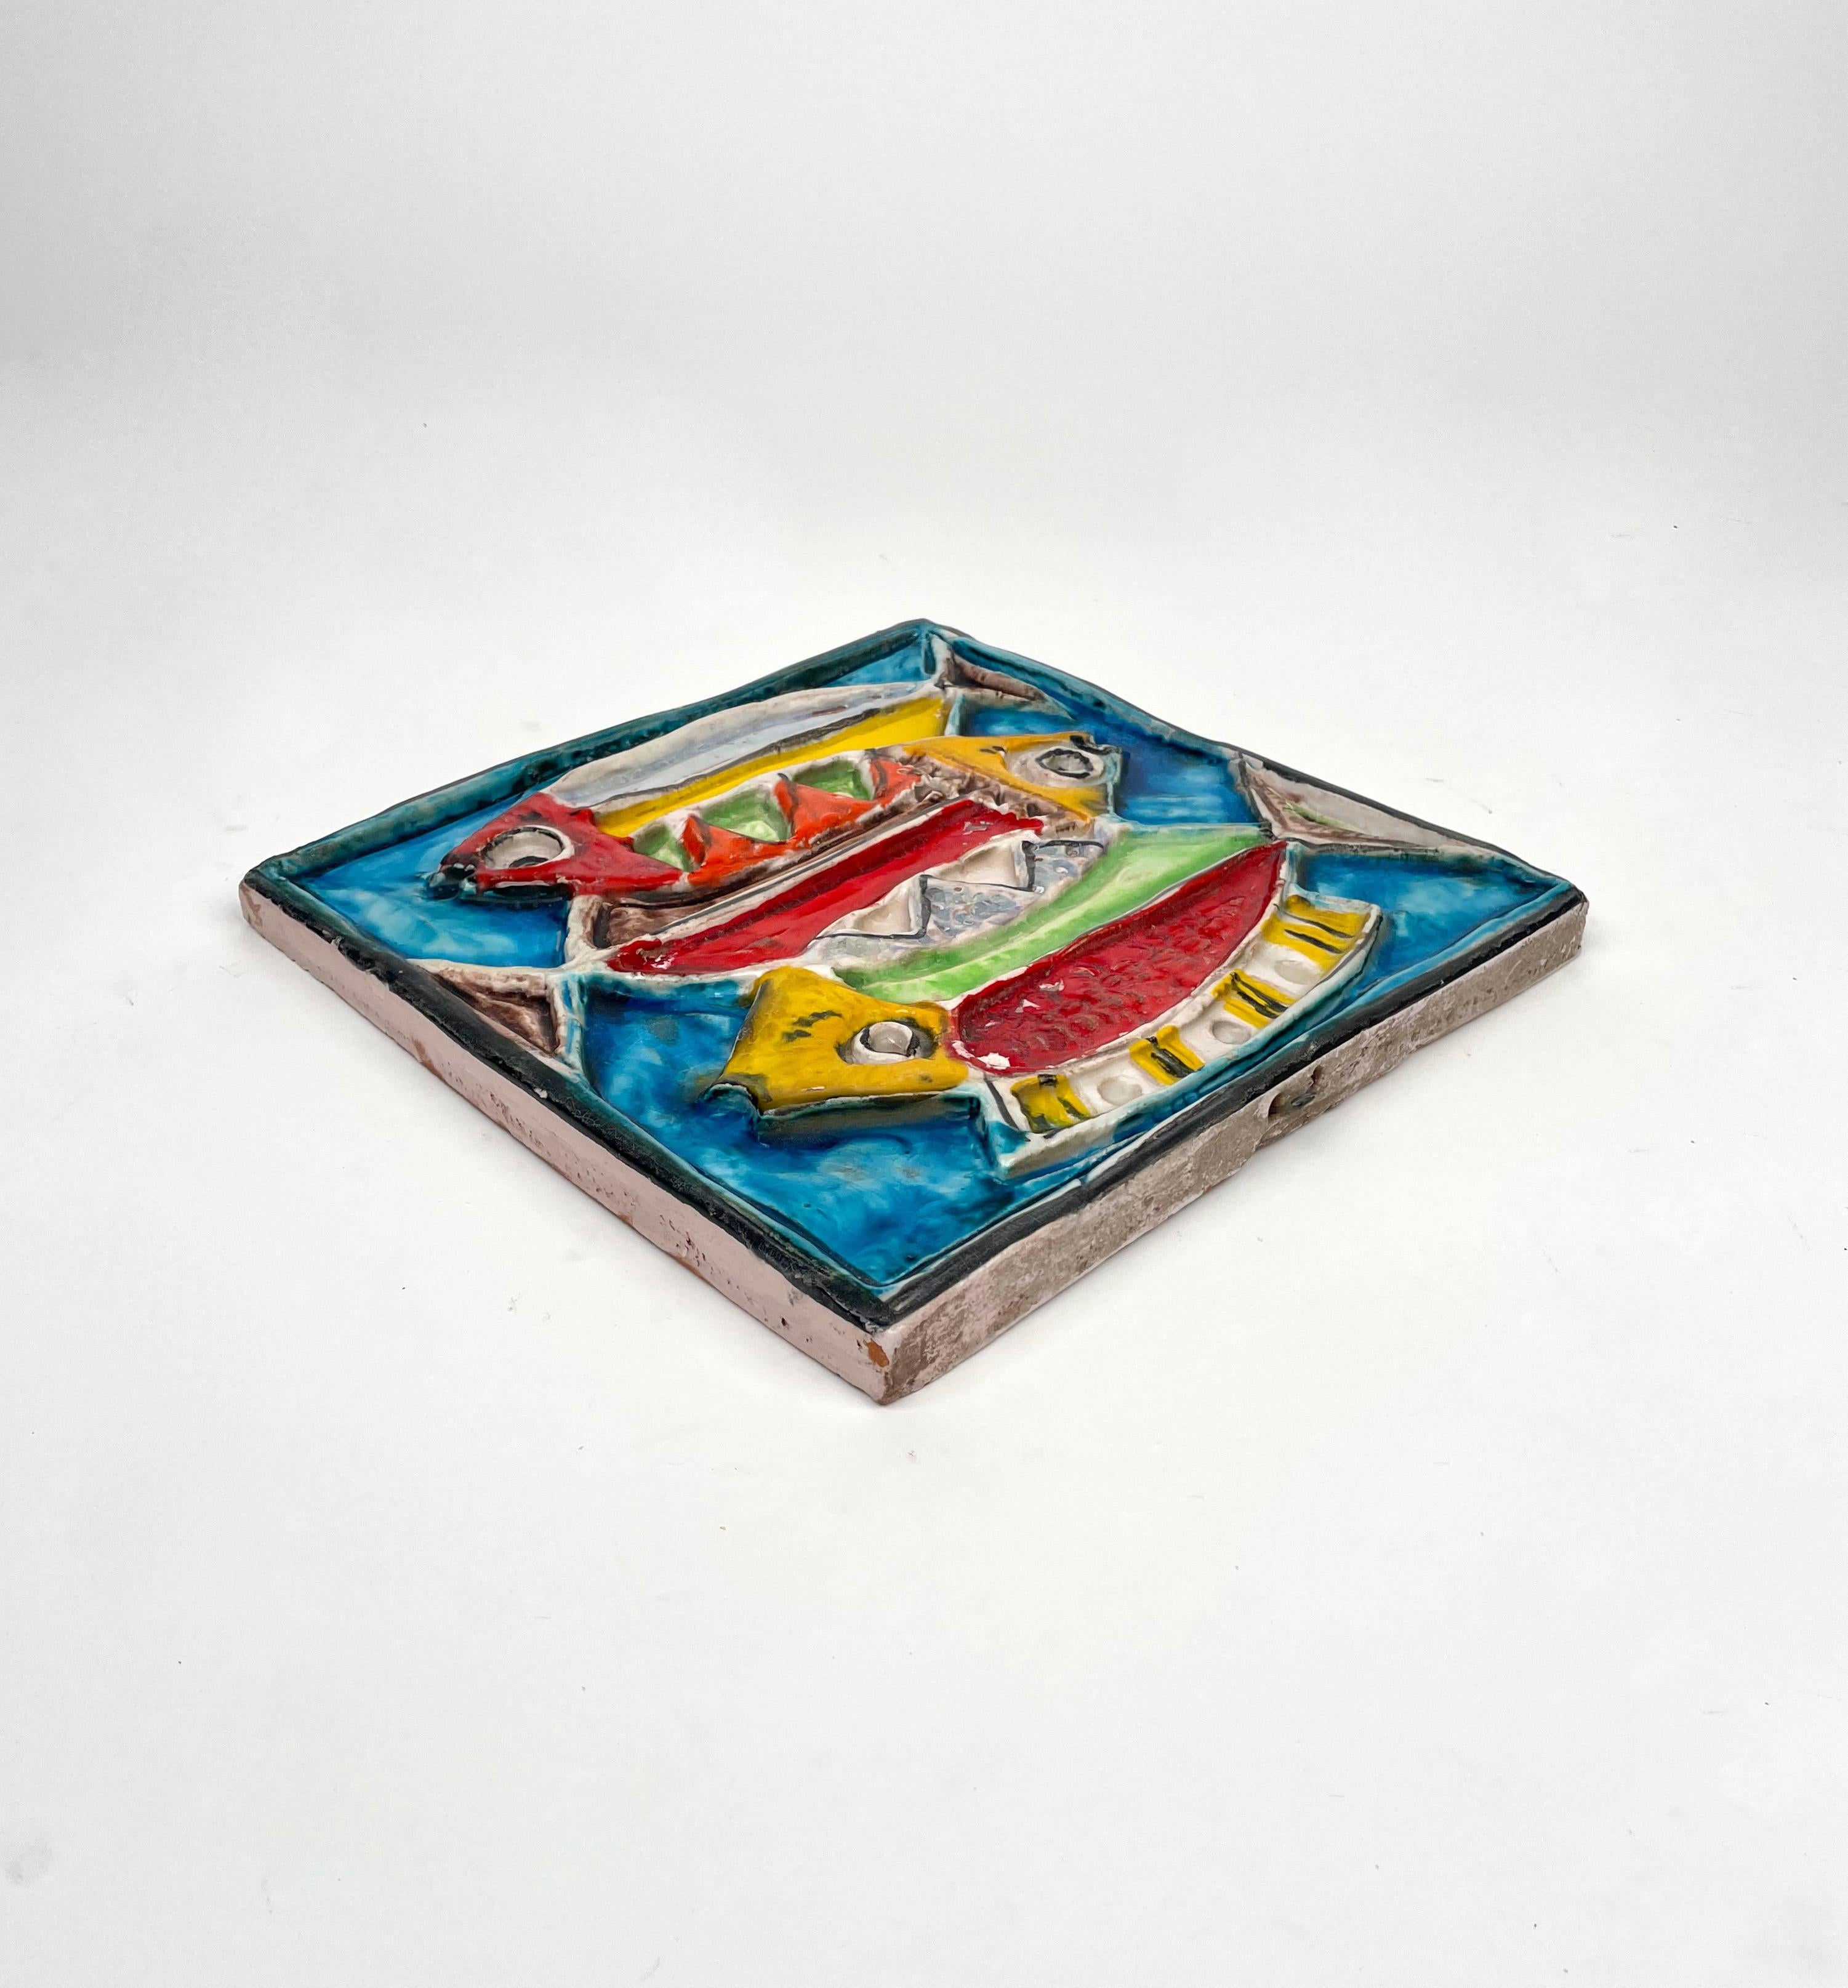 Giovanni de Simone Colored Ceramic Fish Squared Tile Plate, Italy 1960s In Good Condition For Sale In Rome, IT